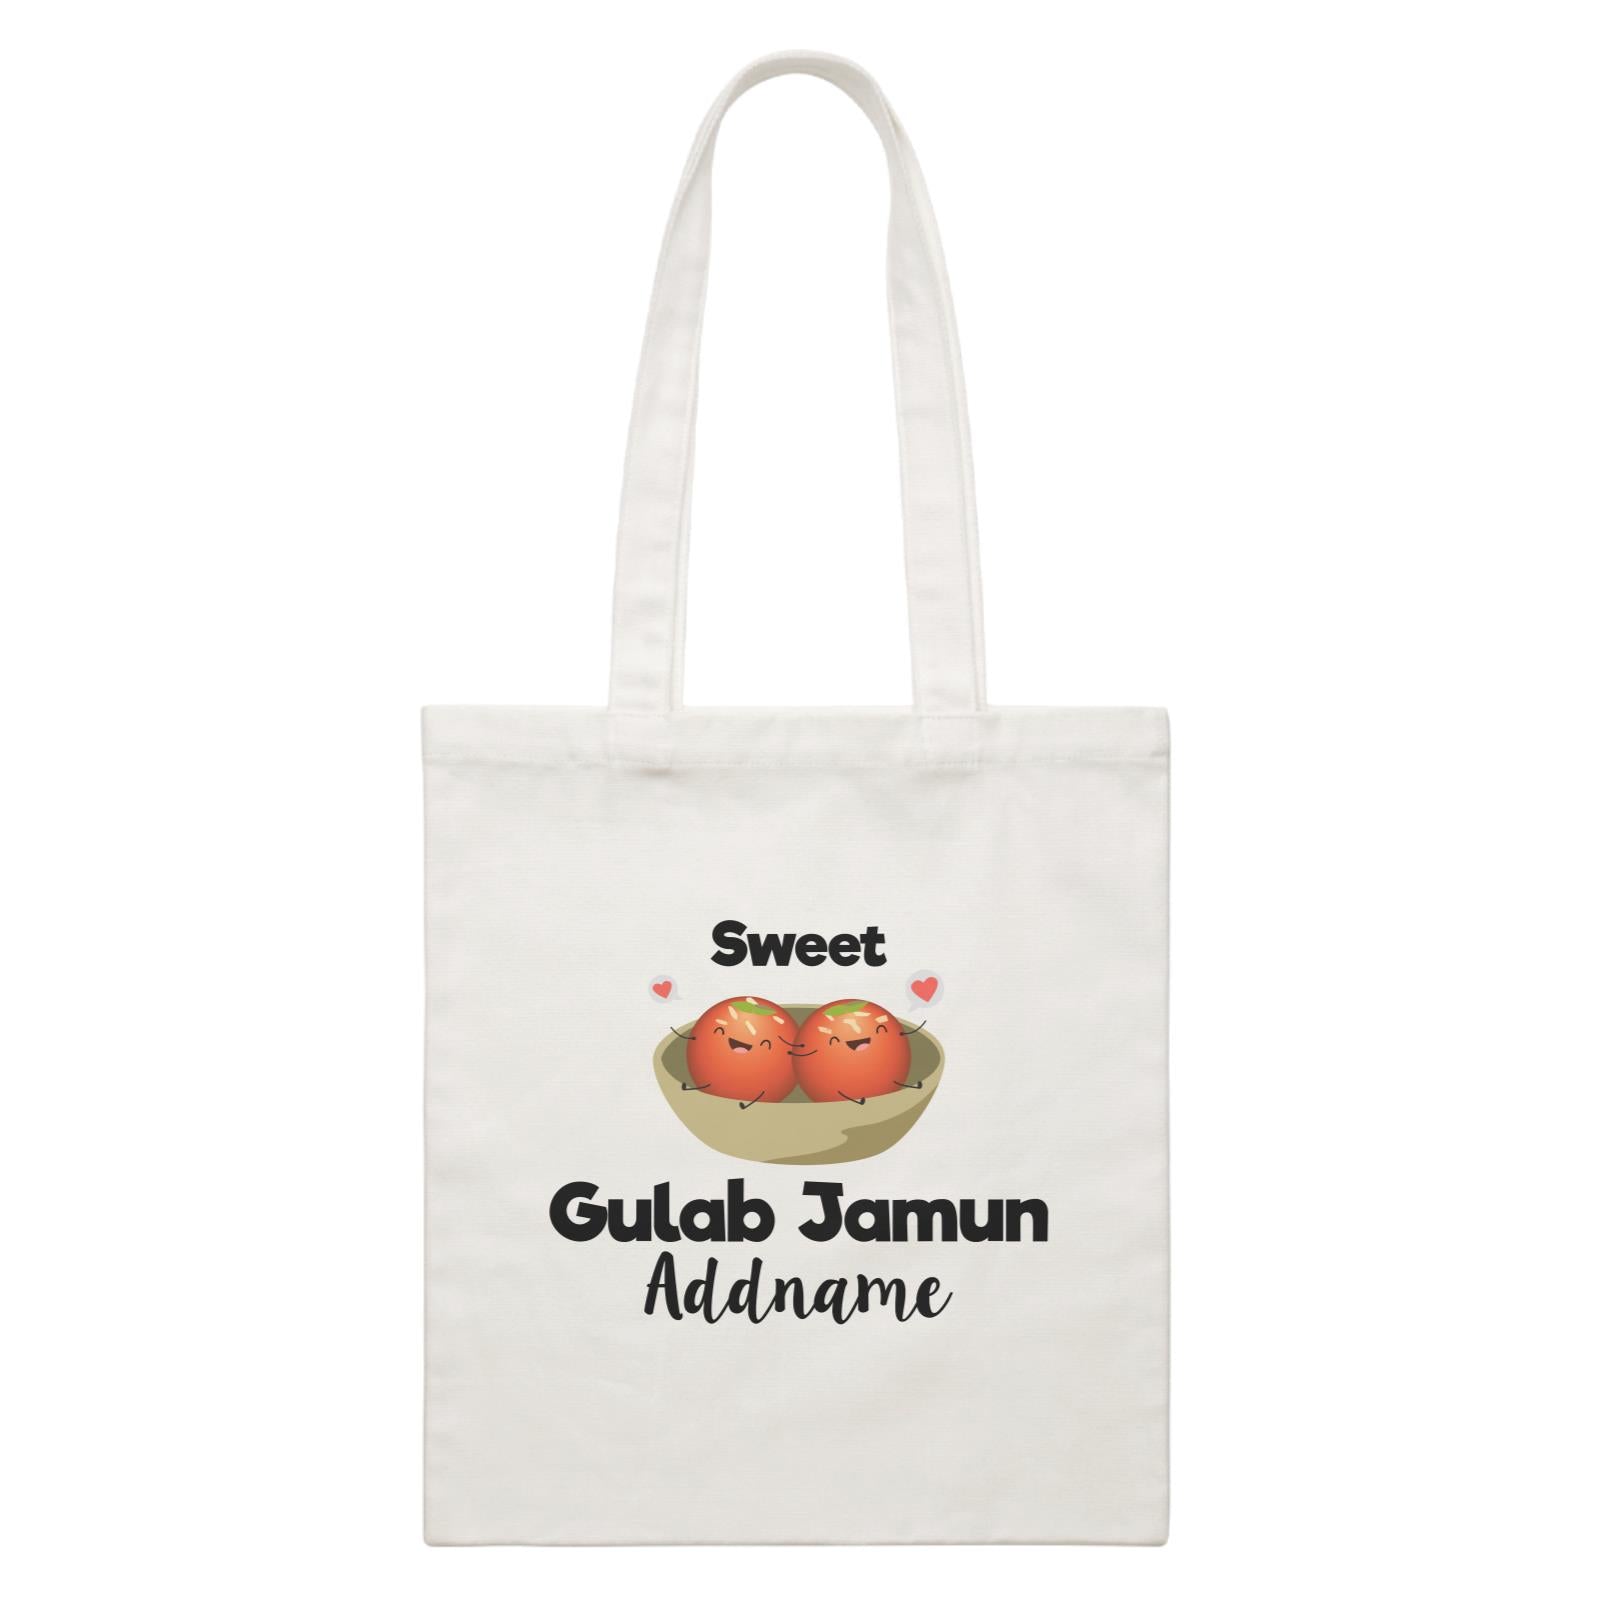 Sweet Gulab Jamun Addname White Canvas Bag